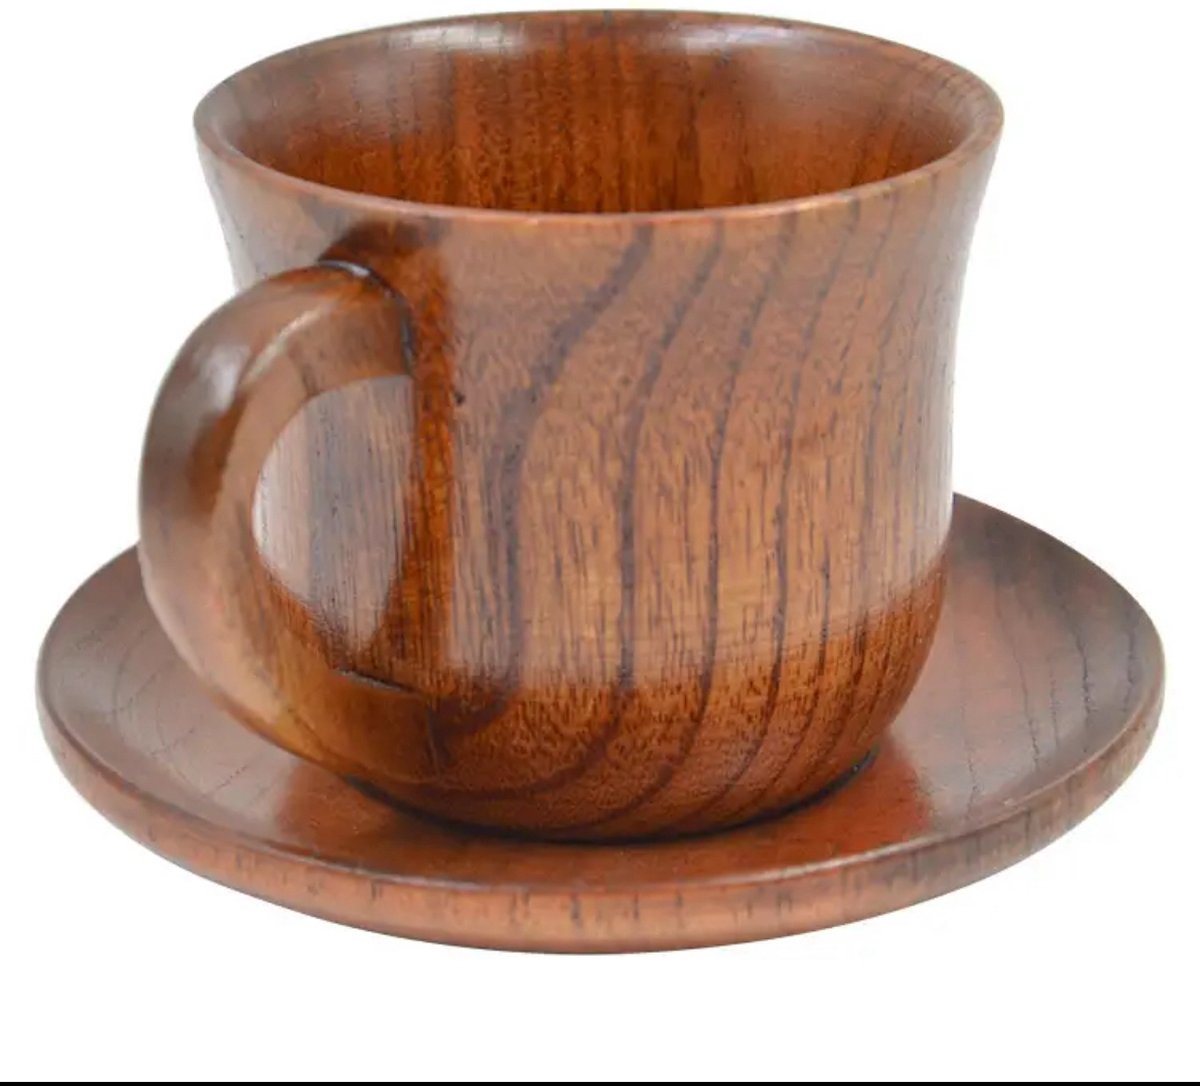 6-delige set houten kop schotel lepel set koffie thee soep gereedschap accessoires kop en schotel set, kleur: bruin, eiken, Authentieke Smaak